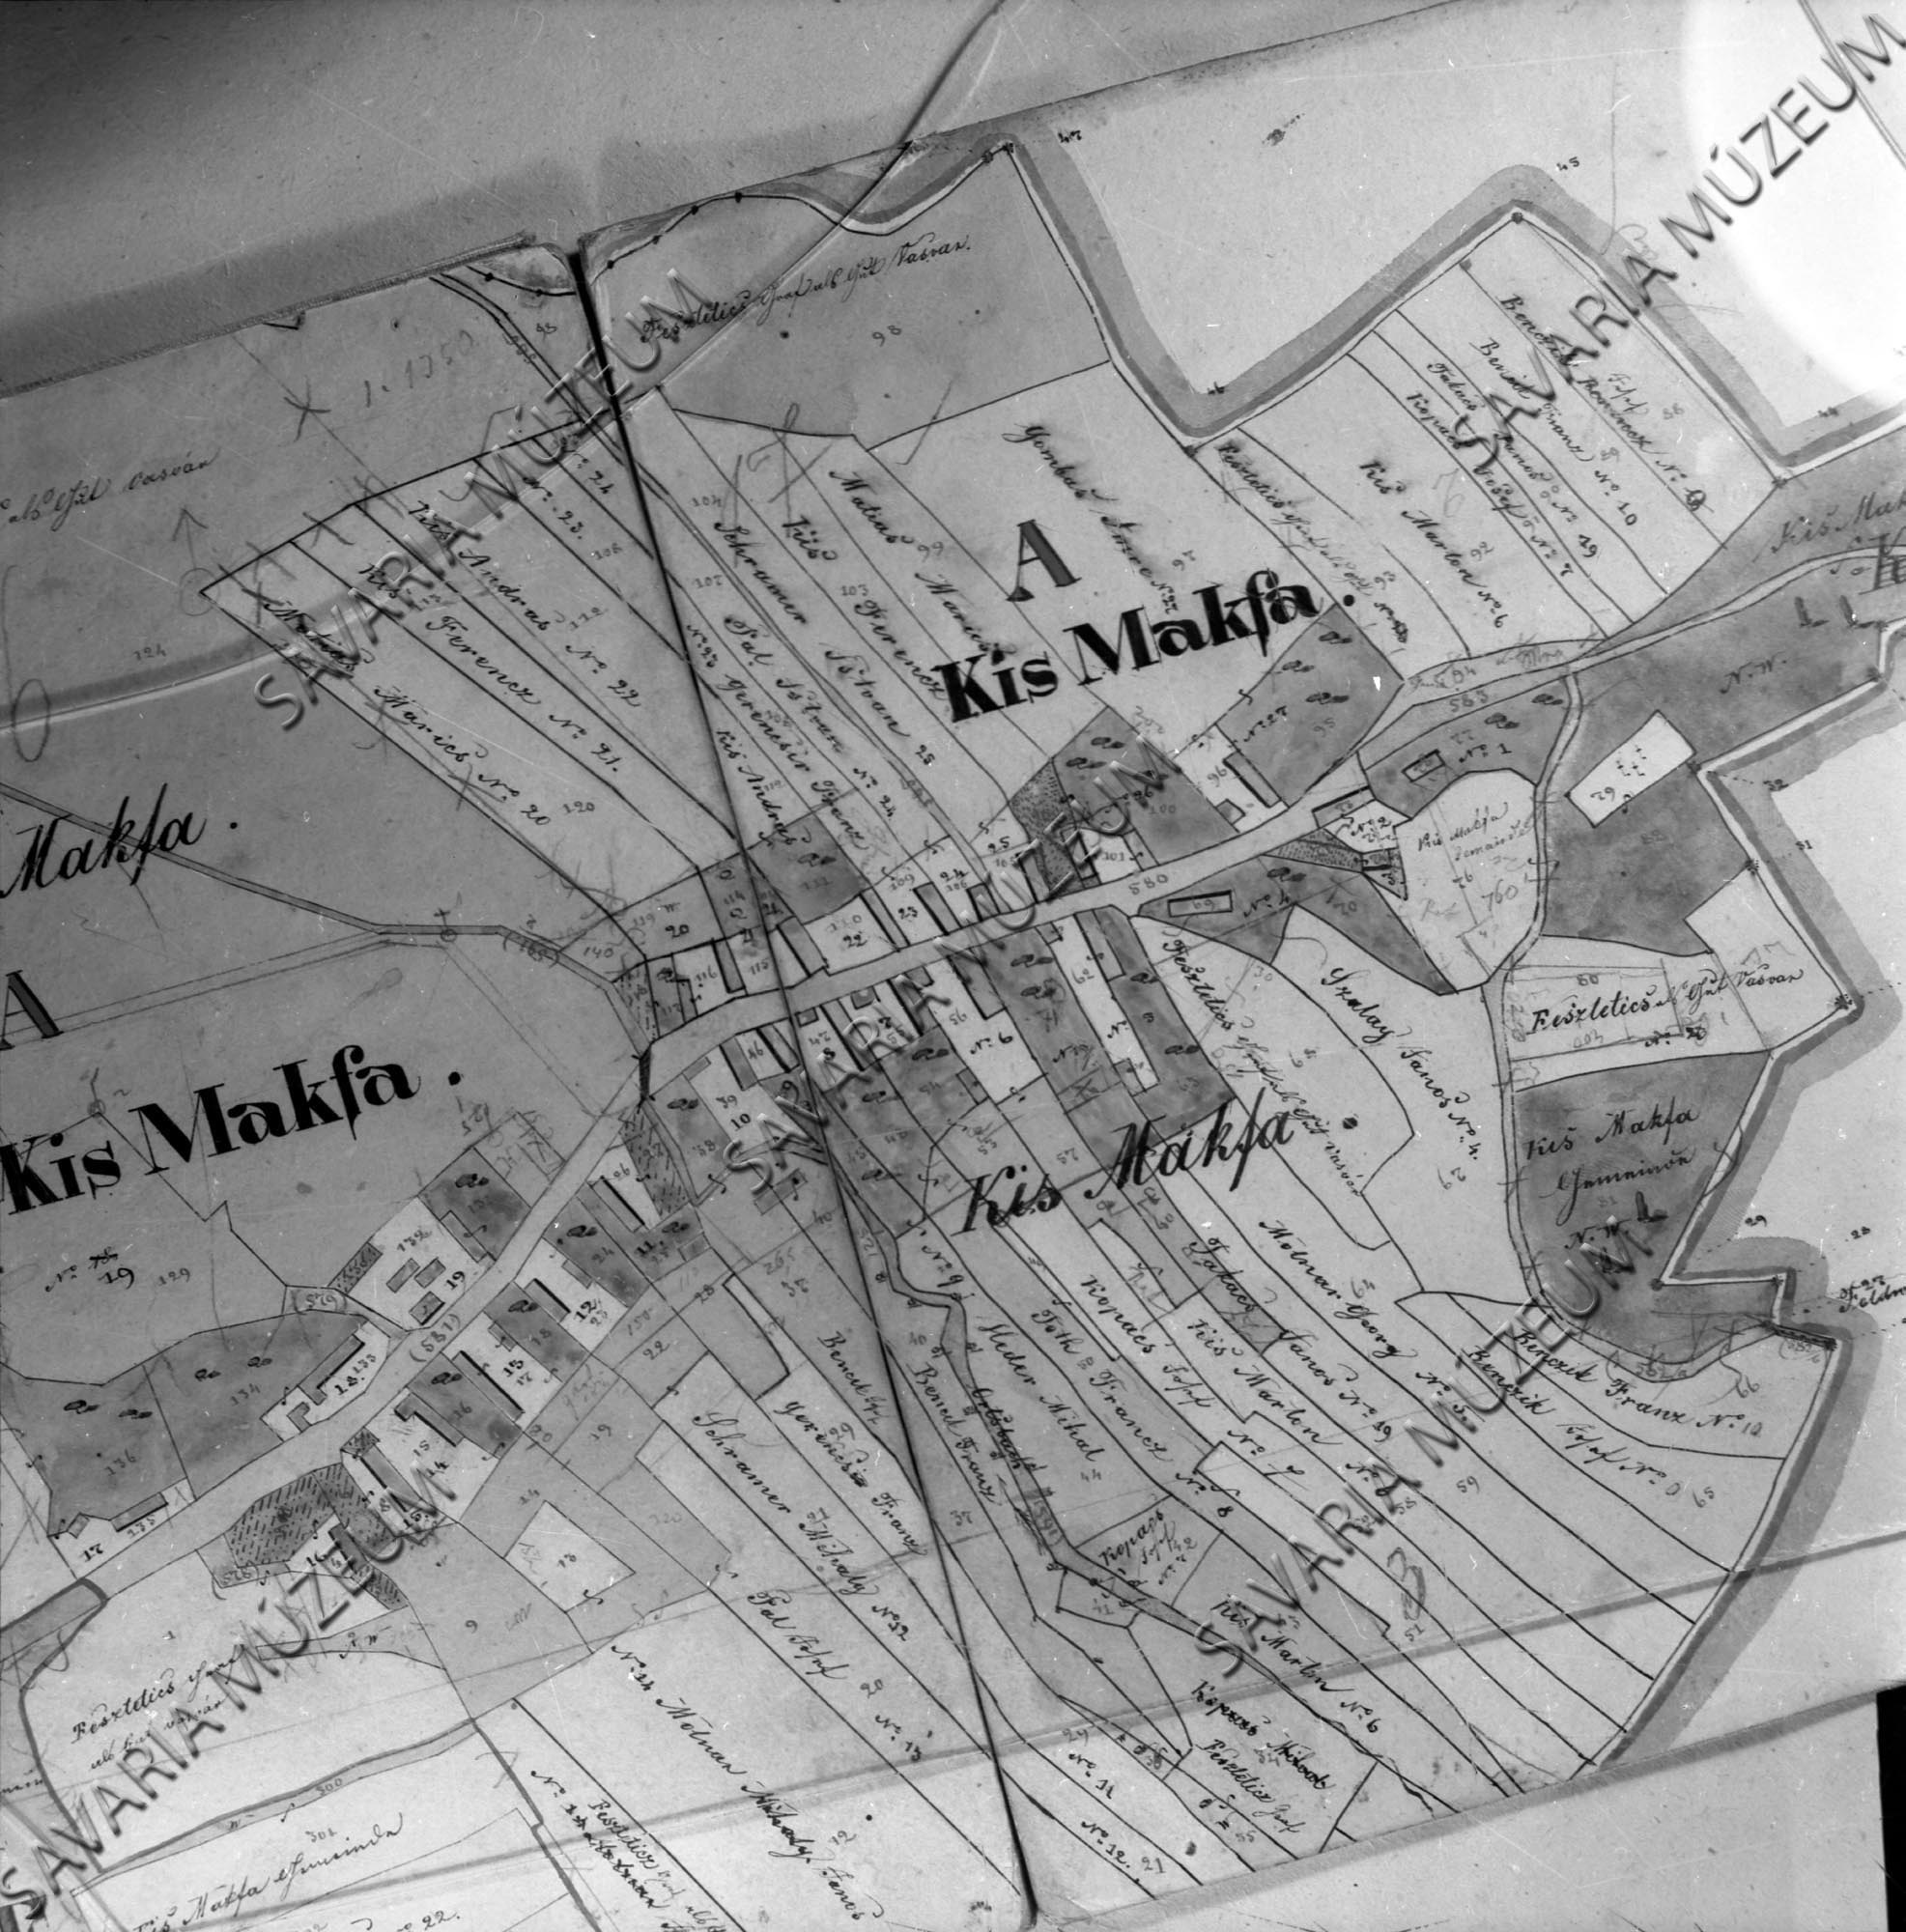 Kismákfa kataszteri térképe 1857. (Savaria Megyei Hatókörű Városi Múzeum, Szombathely CC BY-NC-SA)